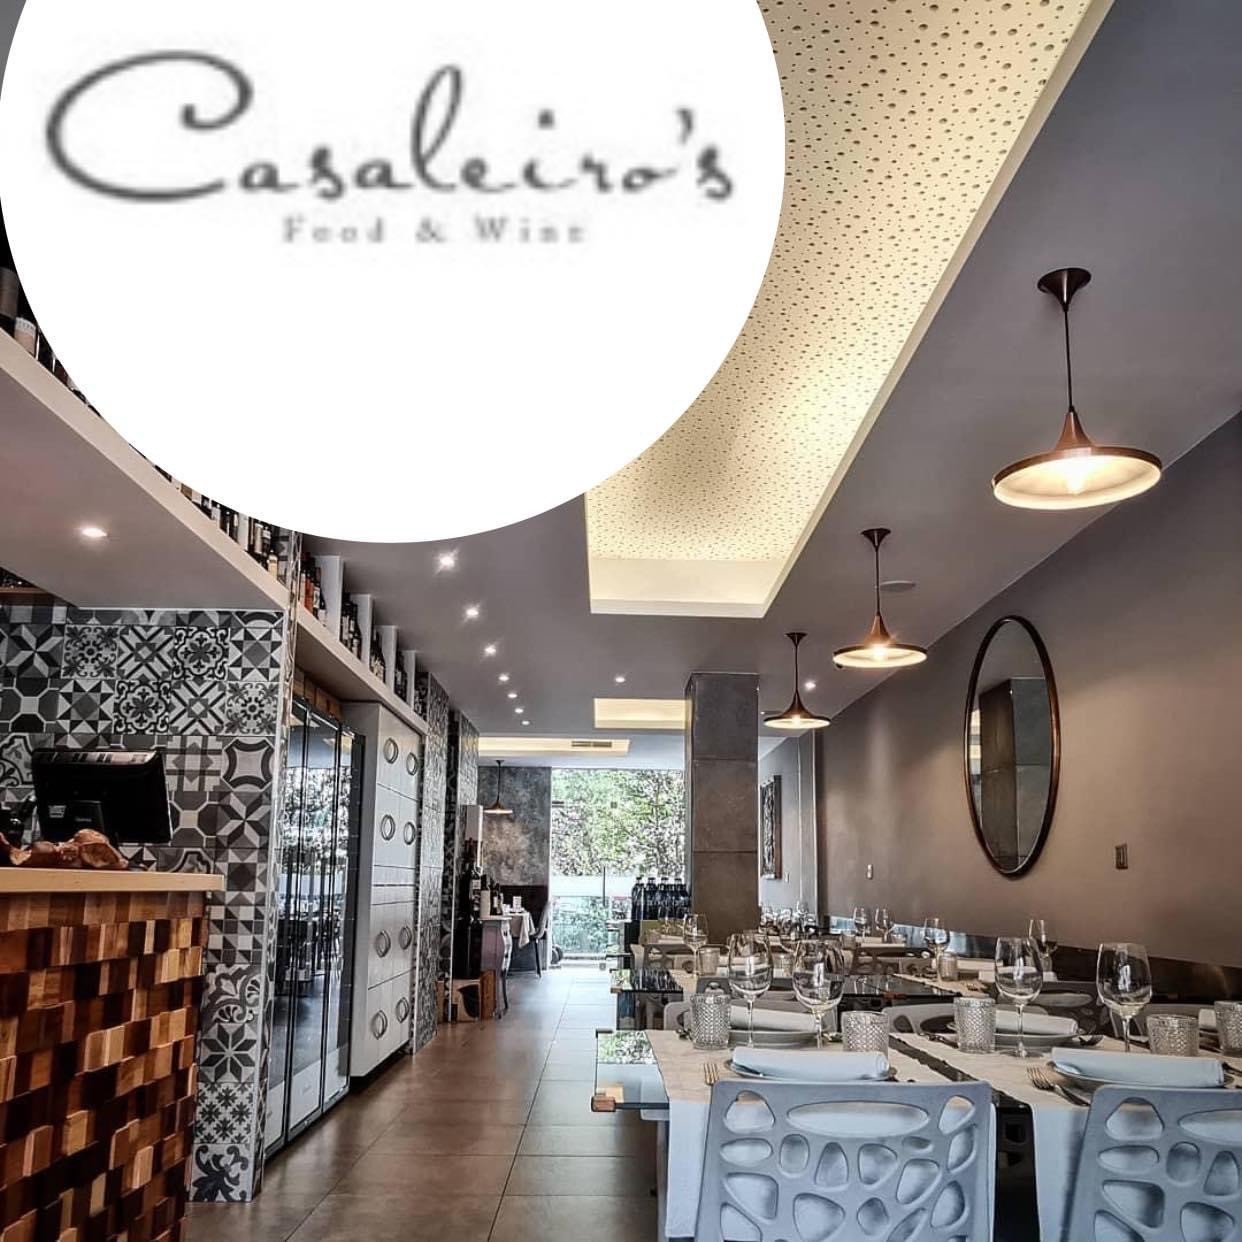 Casaleiro's (Food & Wine Restaurant)